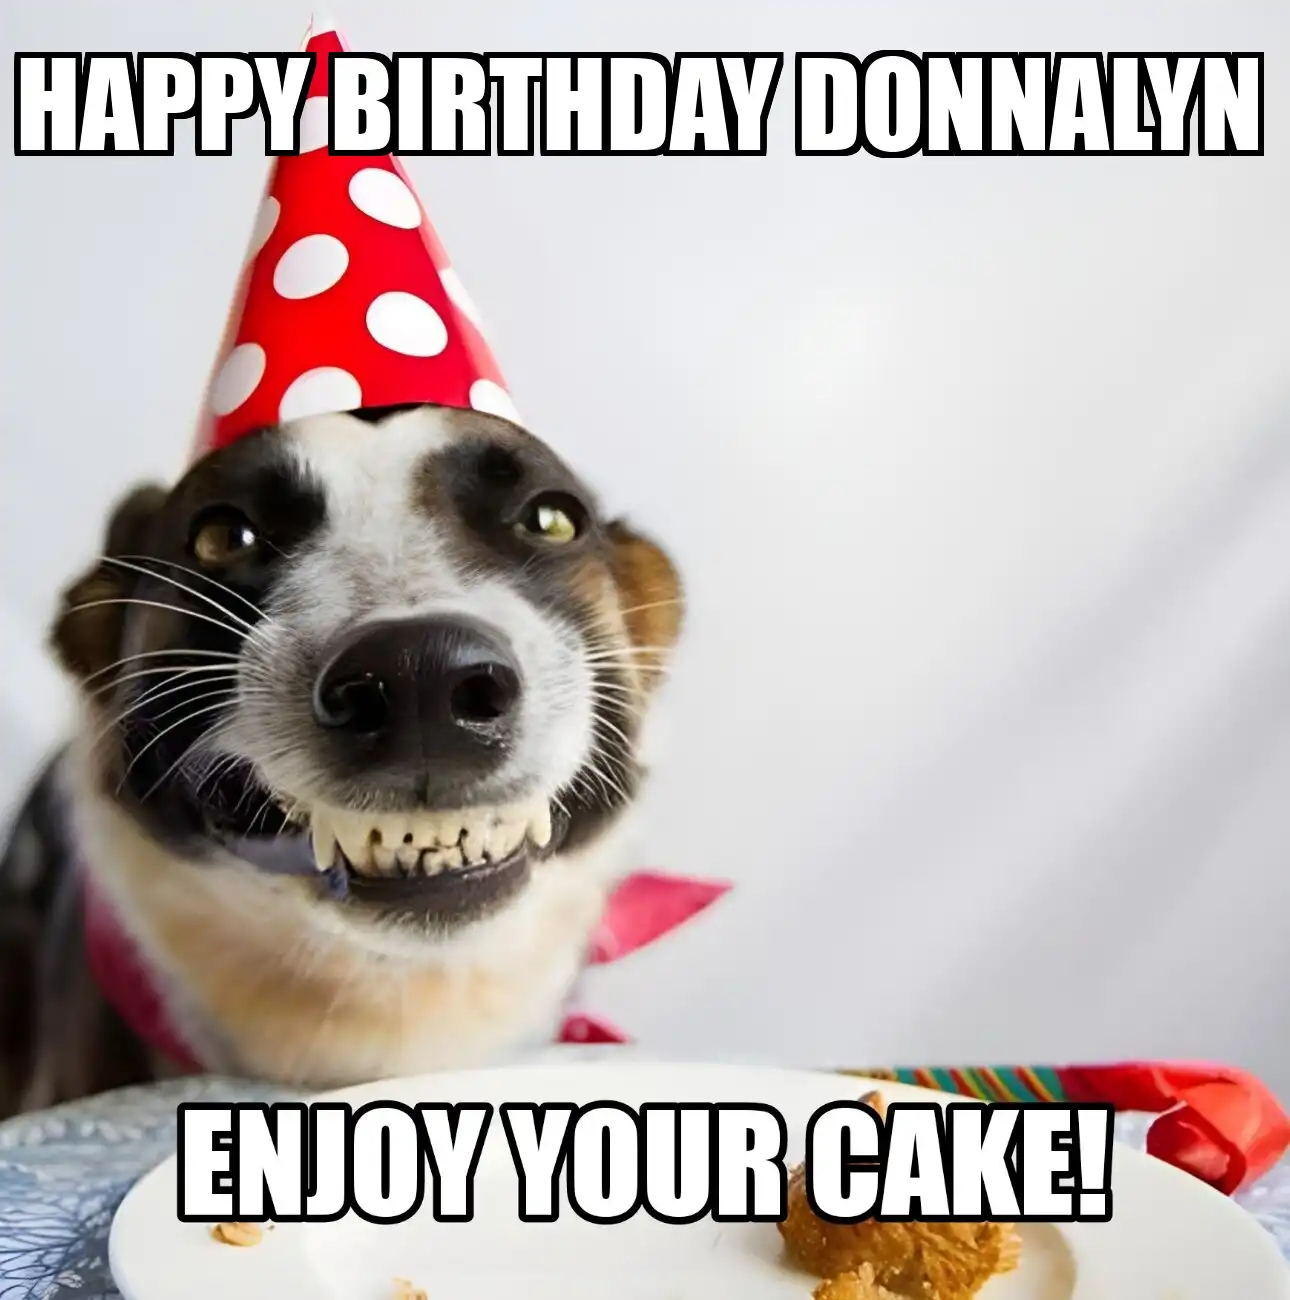 Happy Birthday Donnalyn Enjoy Your Cake Dog Meme